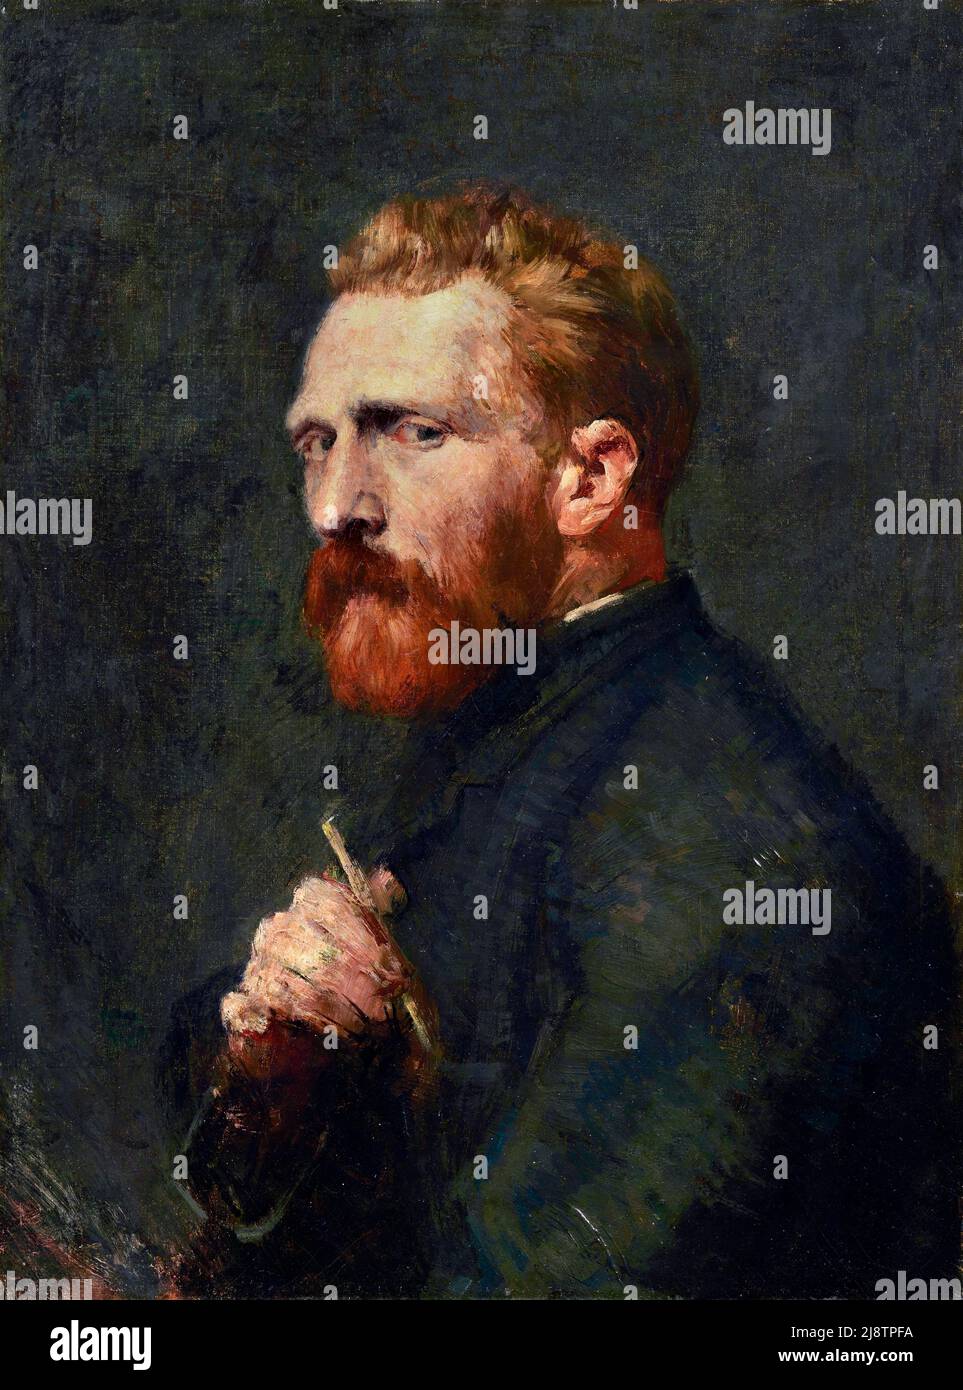 Retrato de Vincent Van Gogh por el pintor impresionista australiano John Russell (1858-1930), óleo sobre lienzo, 1886 Foto de stock